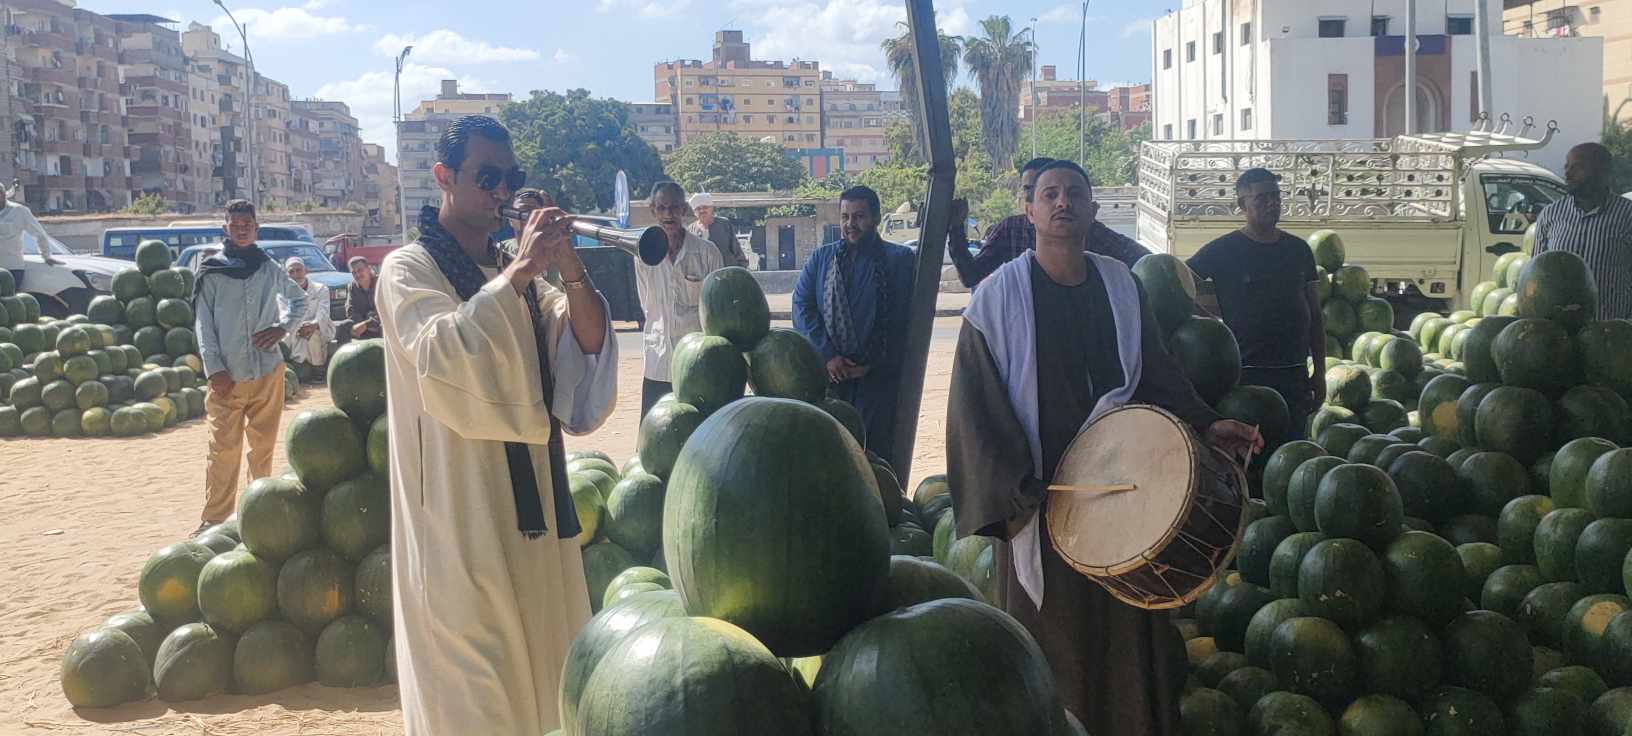 افتتاح بيع البطيخ بالمزمار في الحضرة الإسكندرية